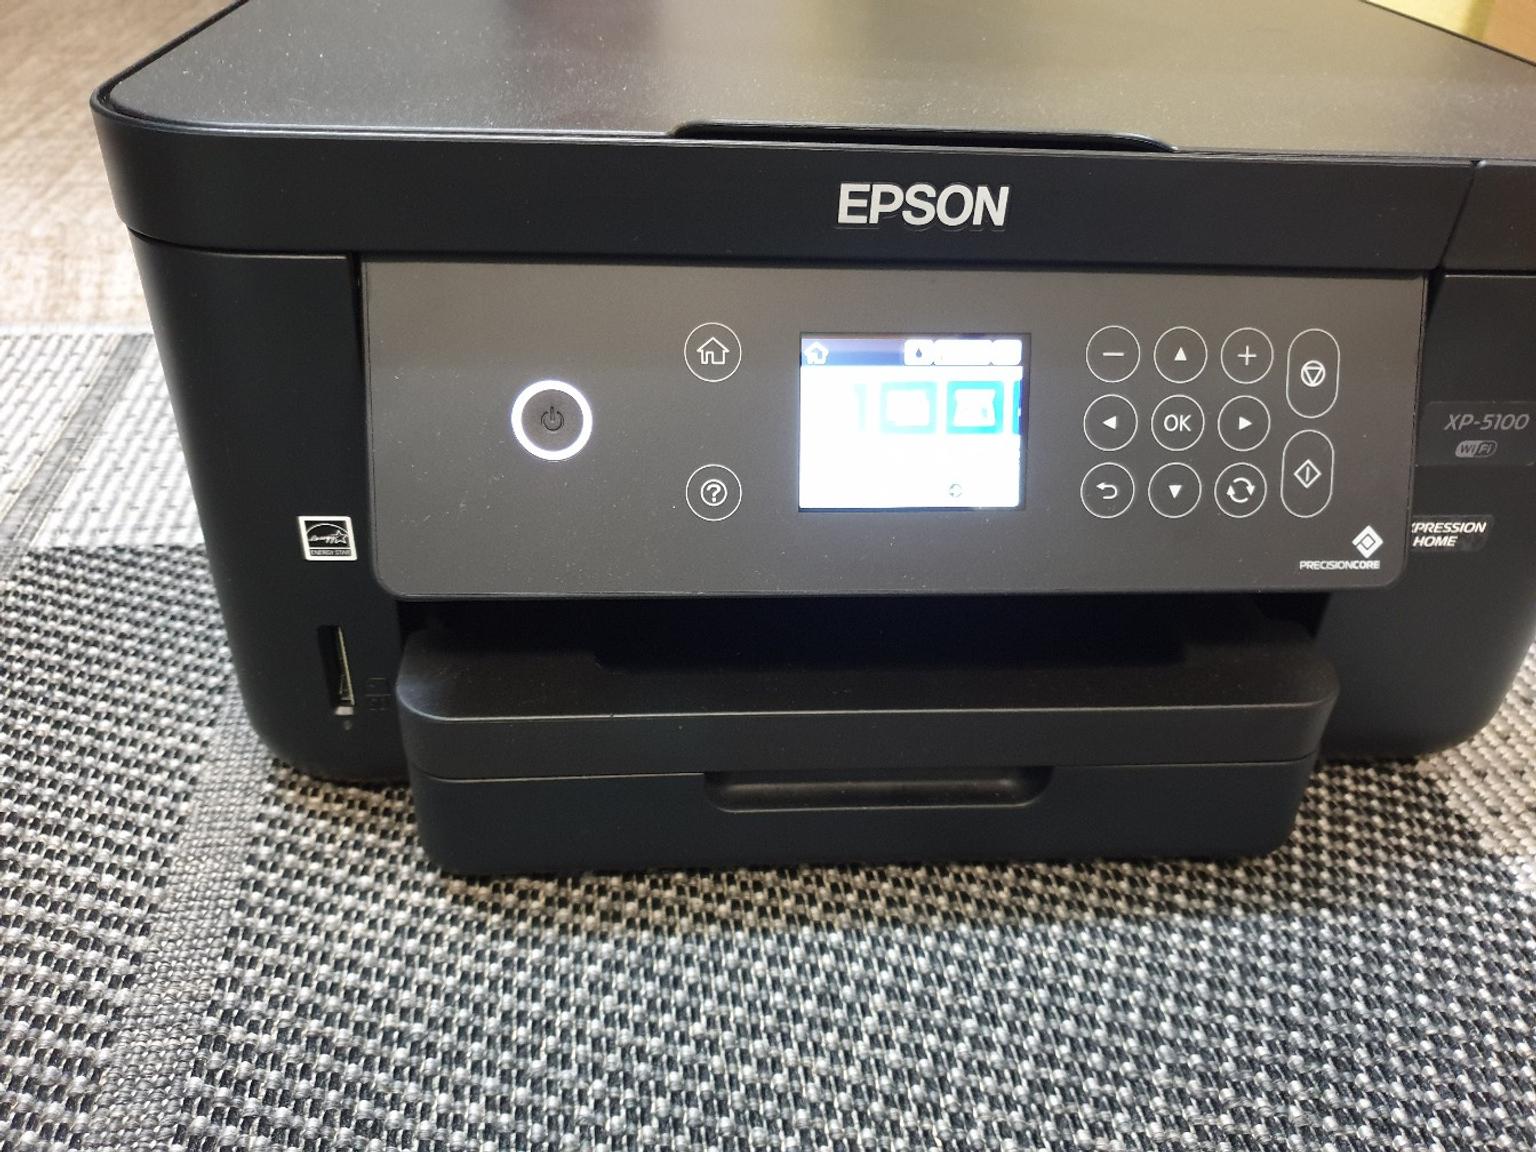 Epson xp 5100 patronen